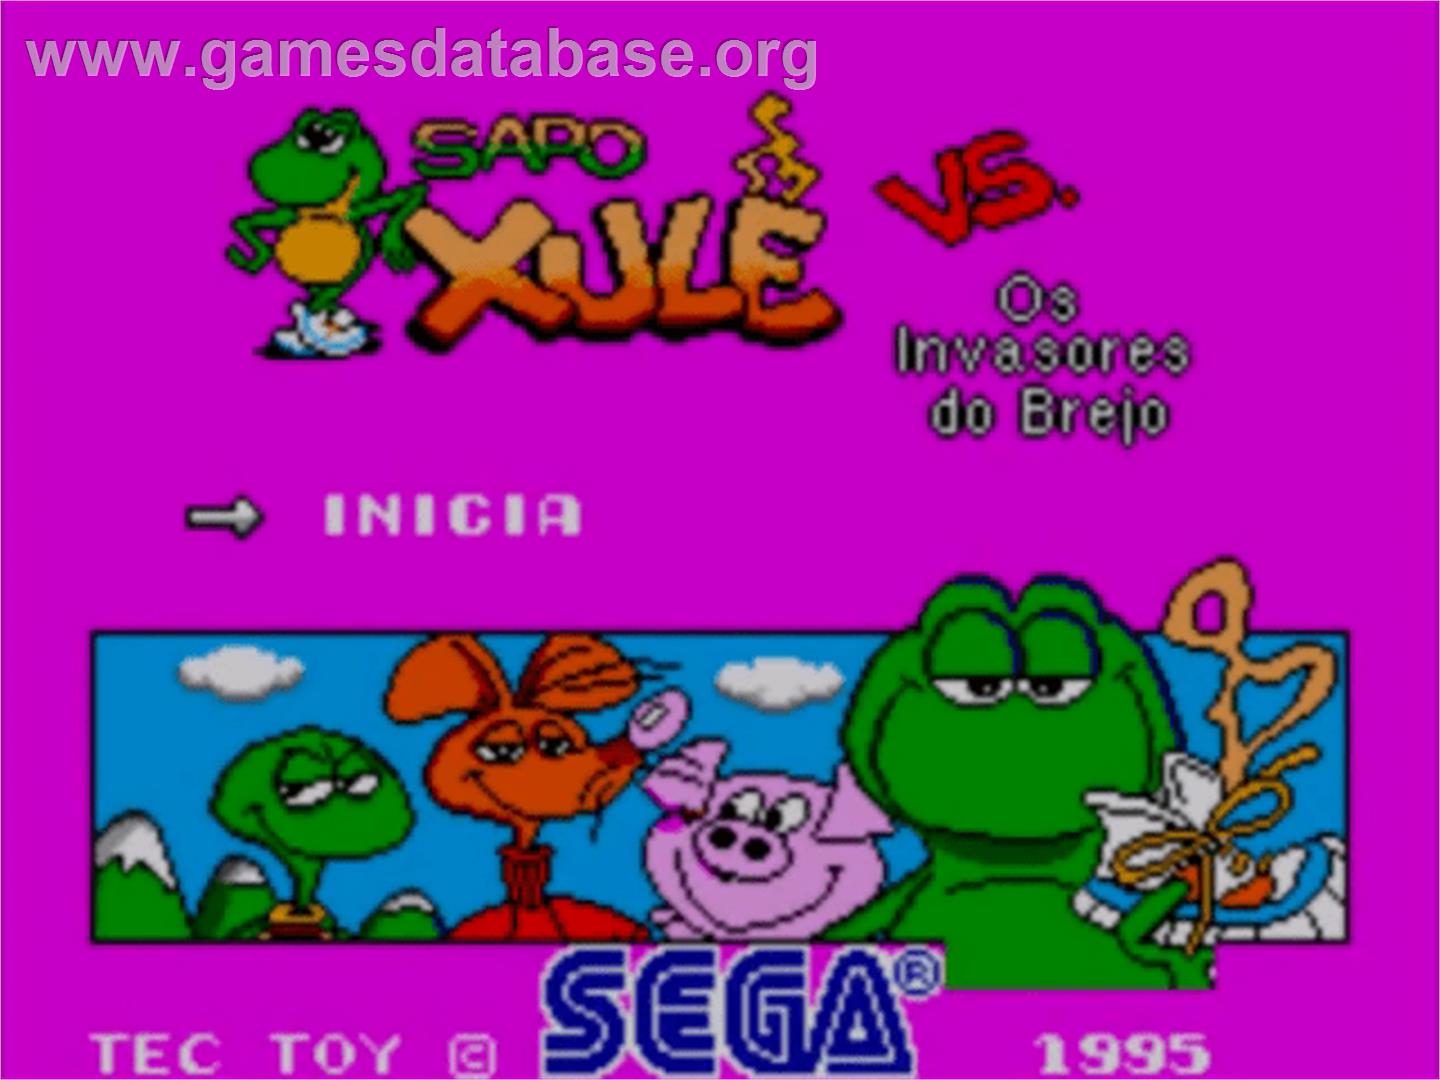 Sapo Xulé vs. Os Invasores do Brejo - Sega Master System - Artwork - Title Screen